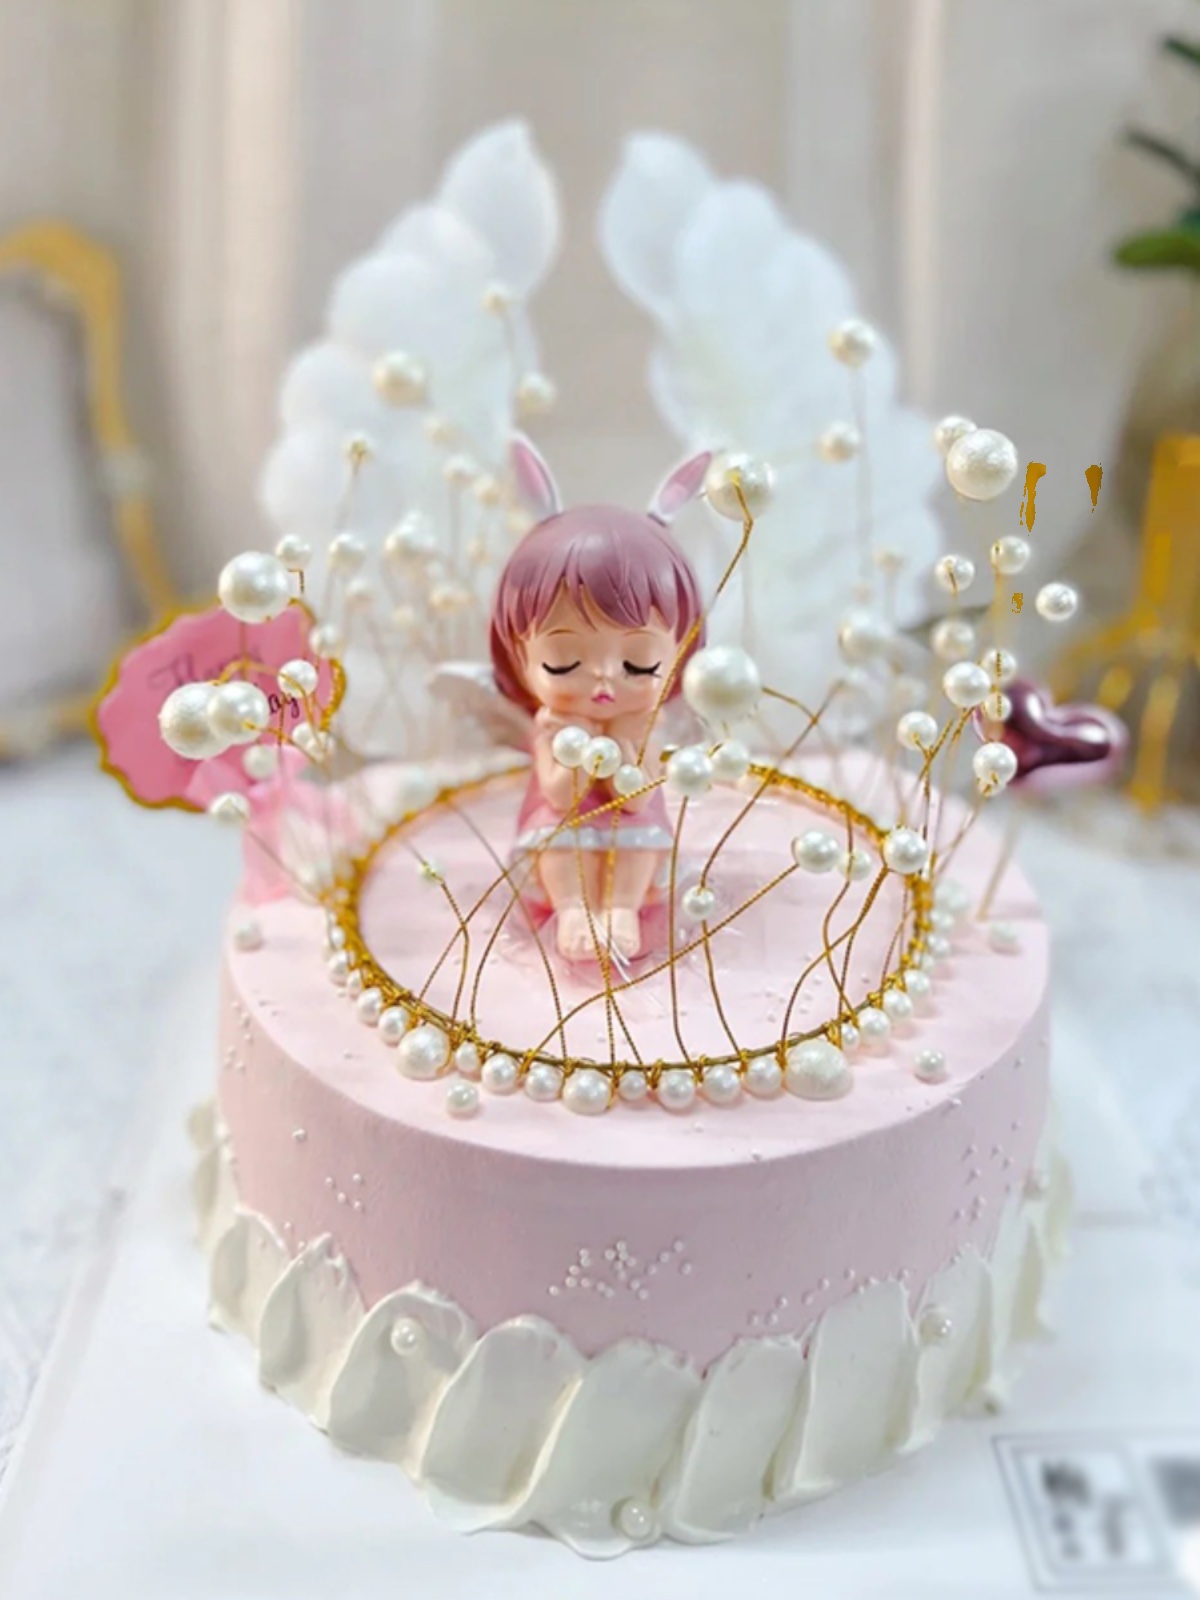 创意蛋糕装饰摆件儿童女孩插件生日快乐宝贝城堡网红派对烘培道具